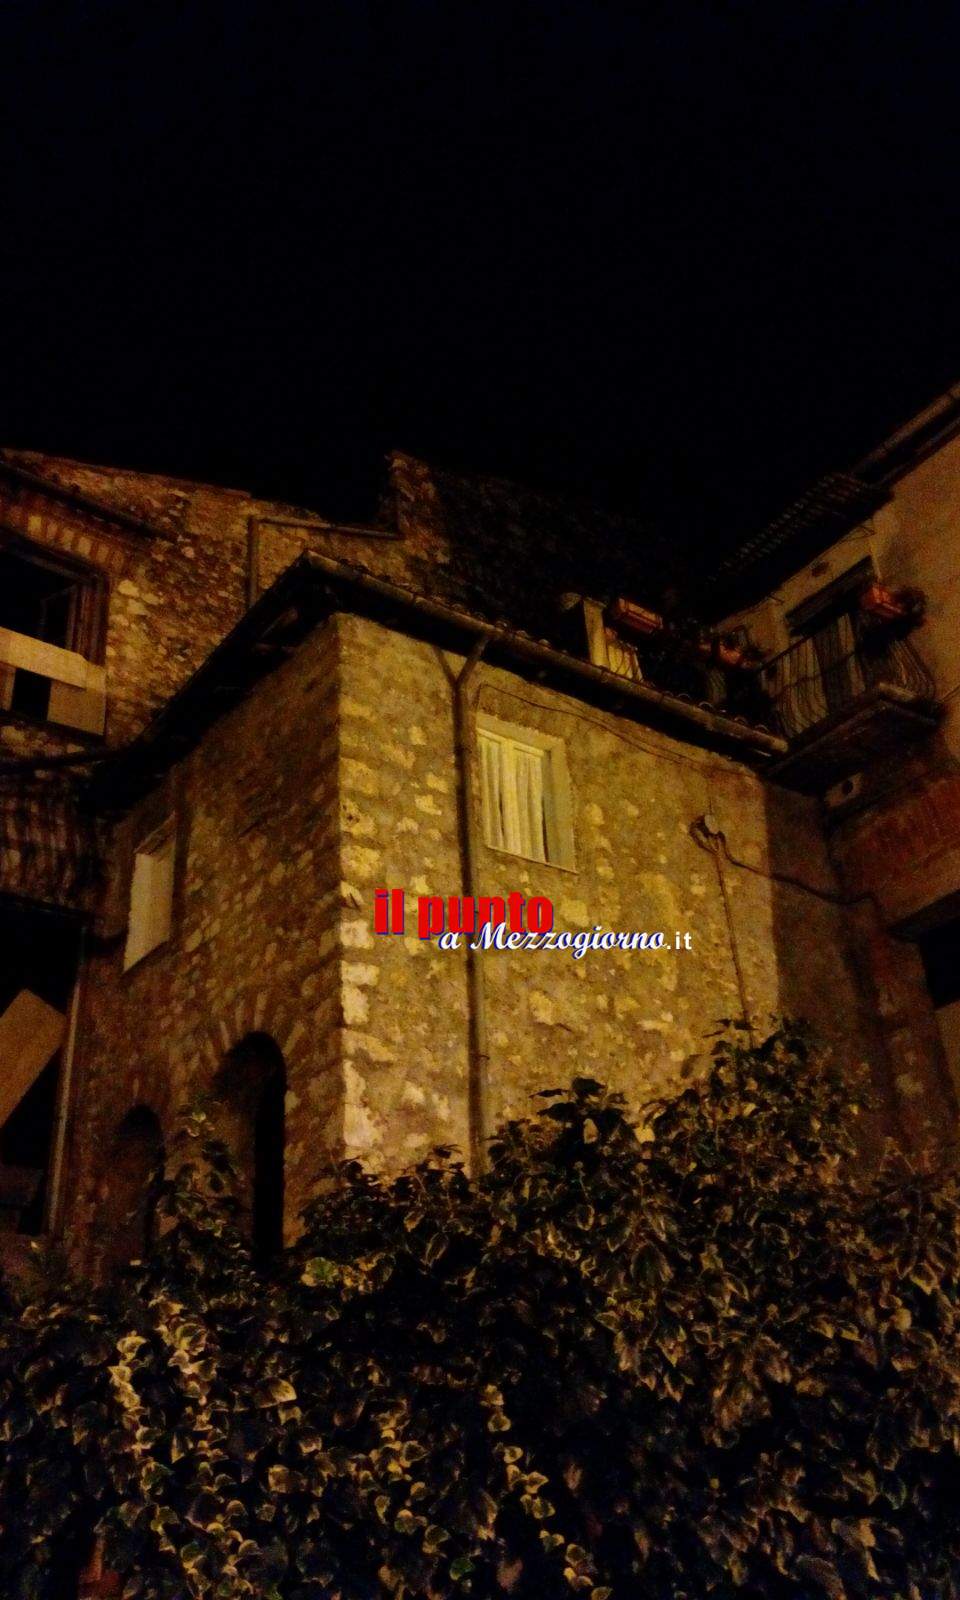 Crollo tetto palazzo ad Alatri, donna salvata dai carabinieri ospite di struttura comunale